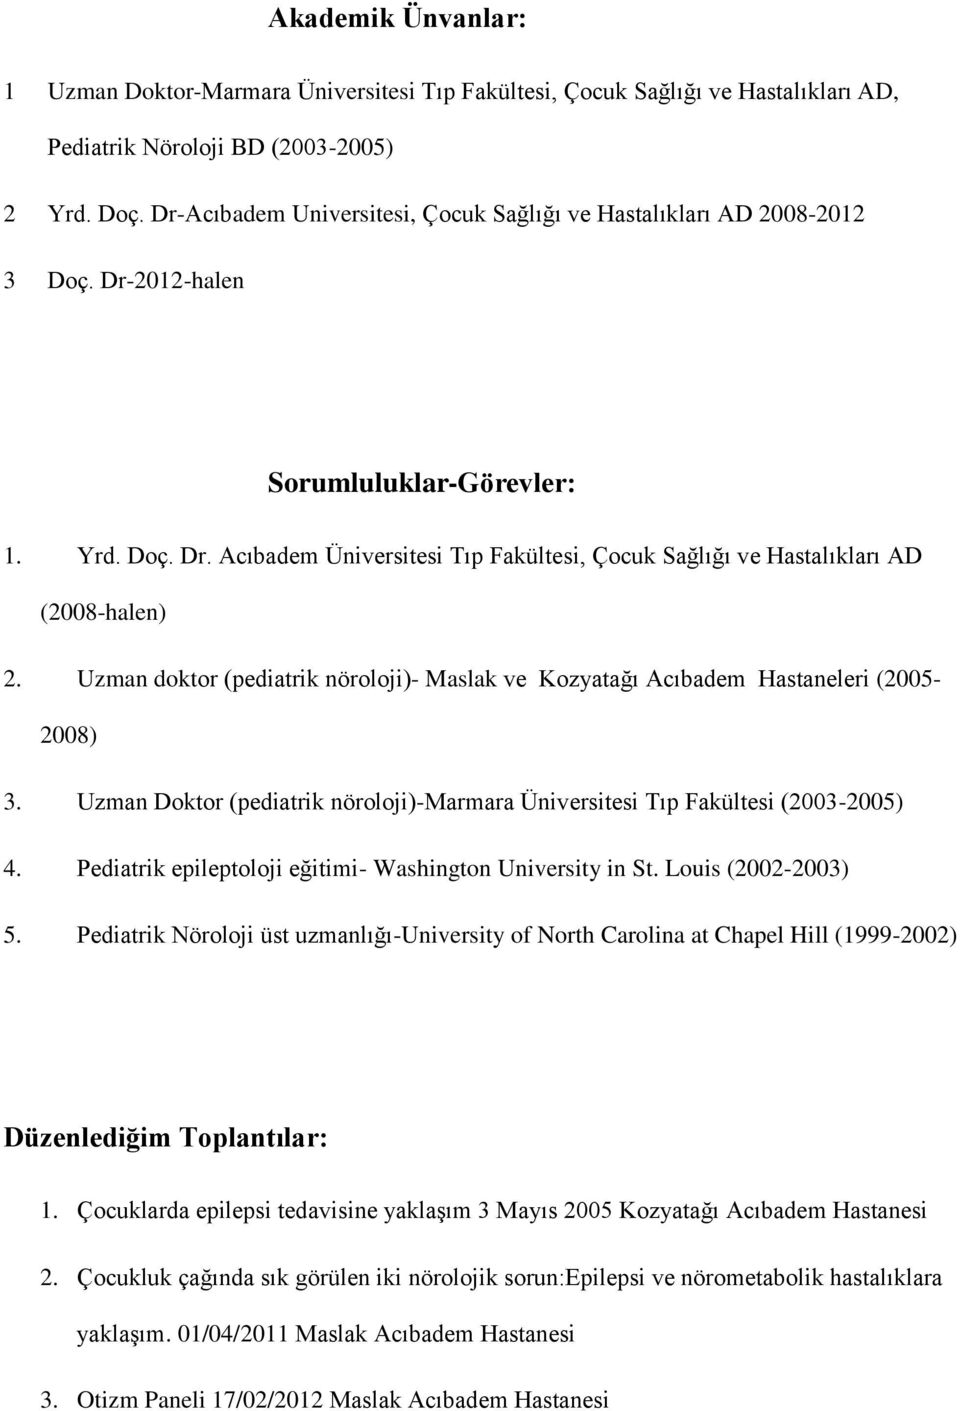 Uzman doktor (pediatrik nöroloji)- Maslak ve Kozyatağı Acıbadem Hastaneleri (2005-2008) 3. Uzman Doktor (pediatrik nöroloji)-marmara Üniversitesi Tıp Fakültesi (2003-2005) 4.